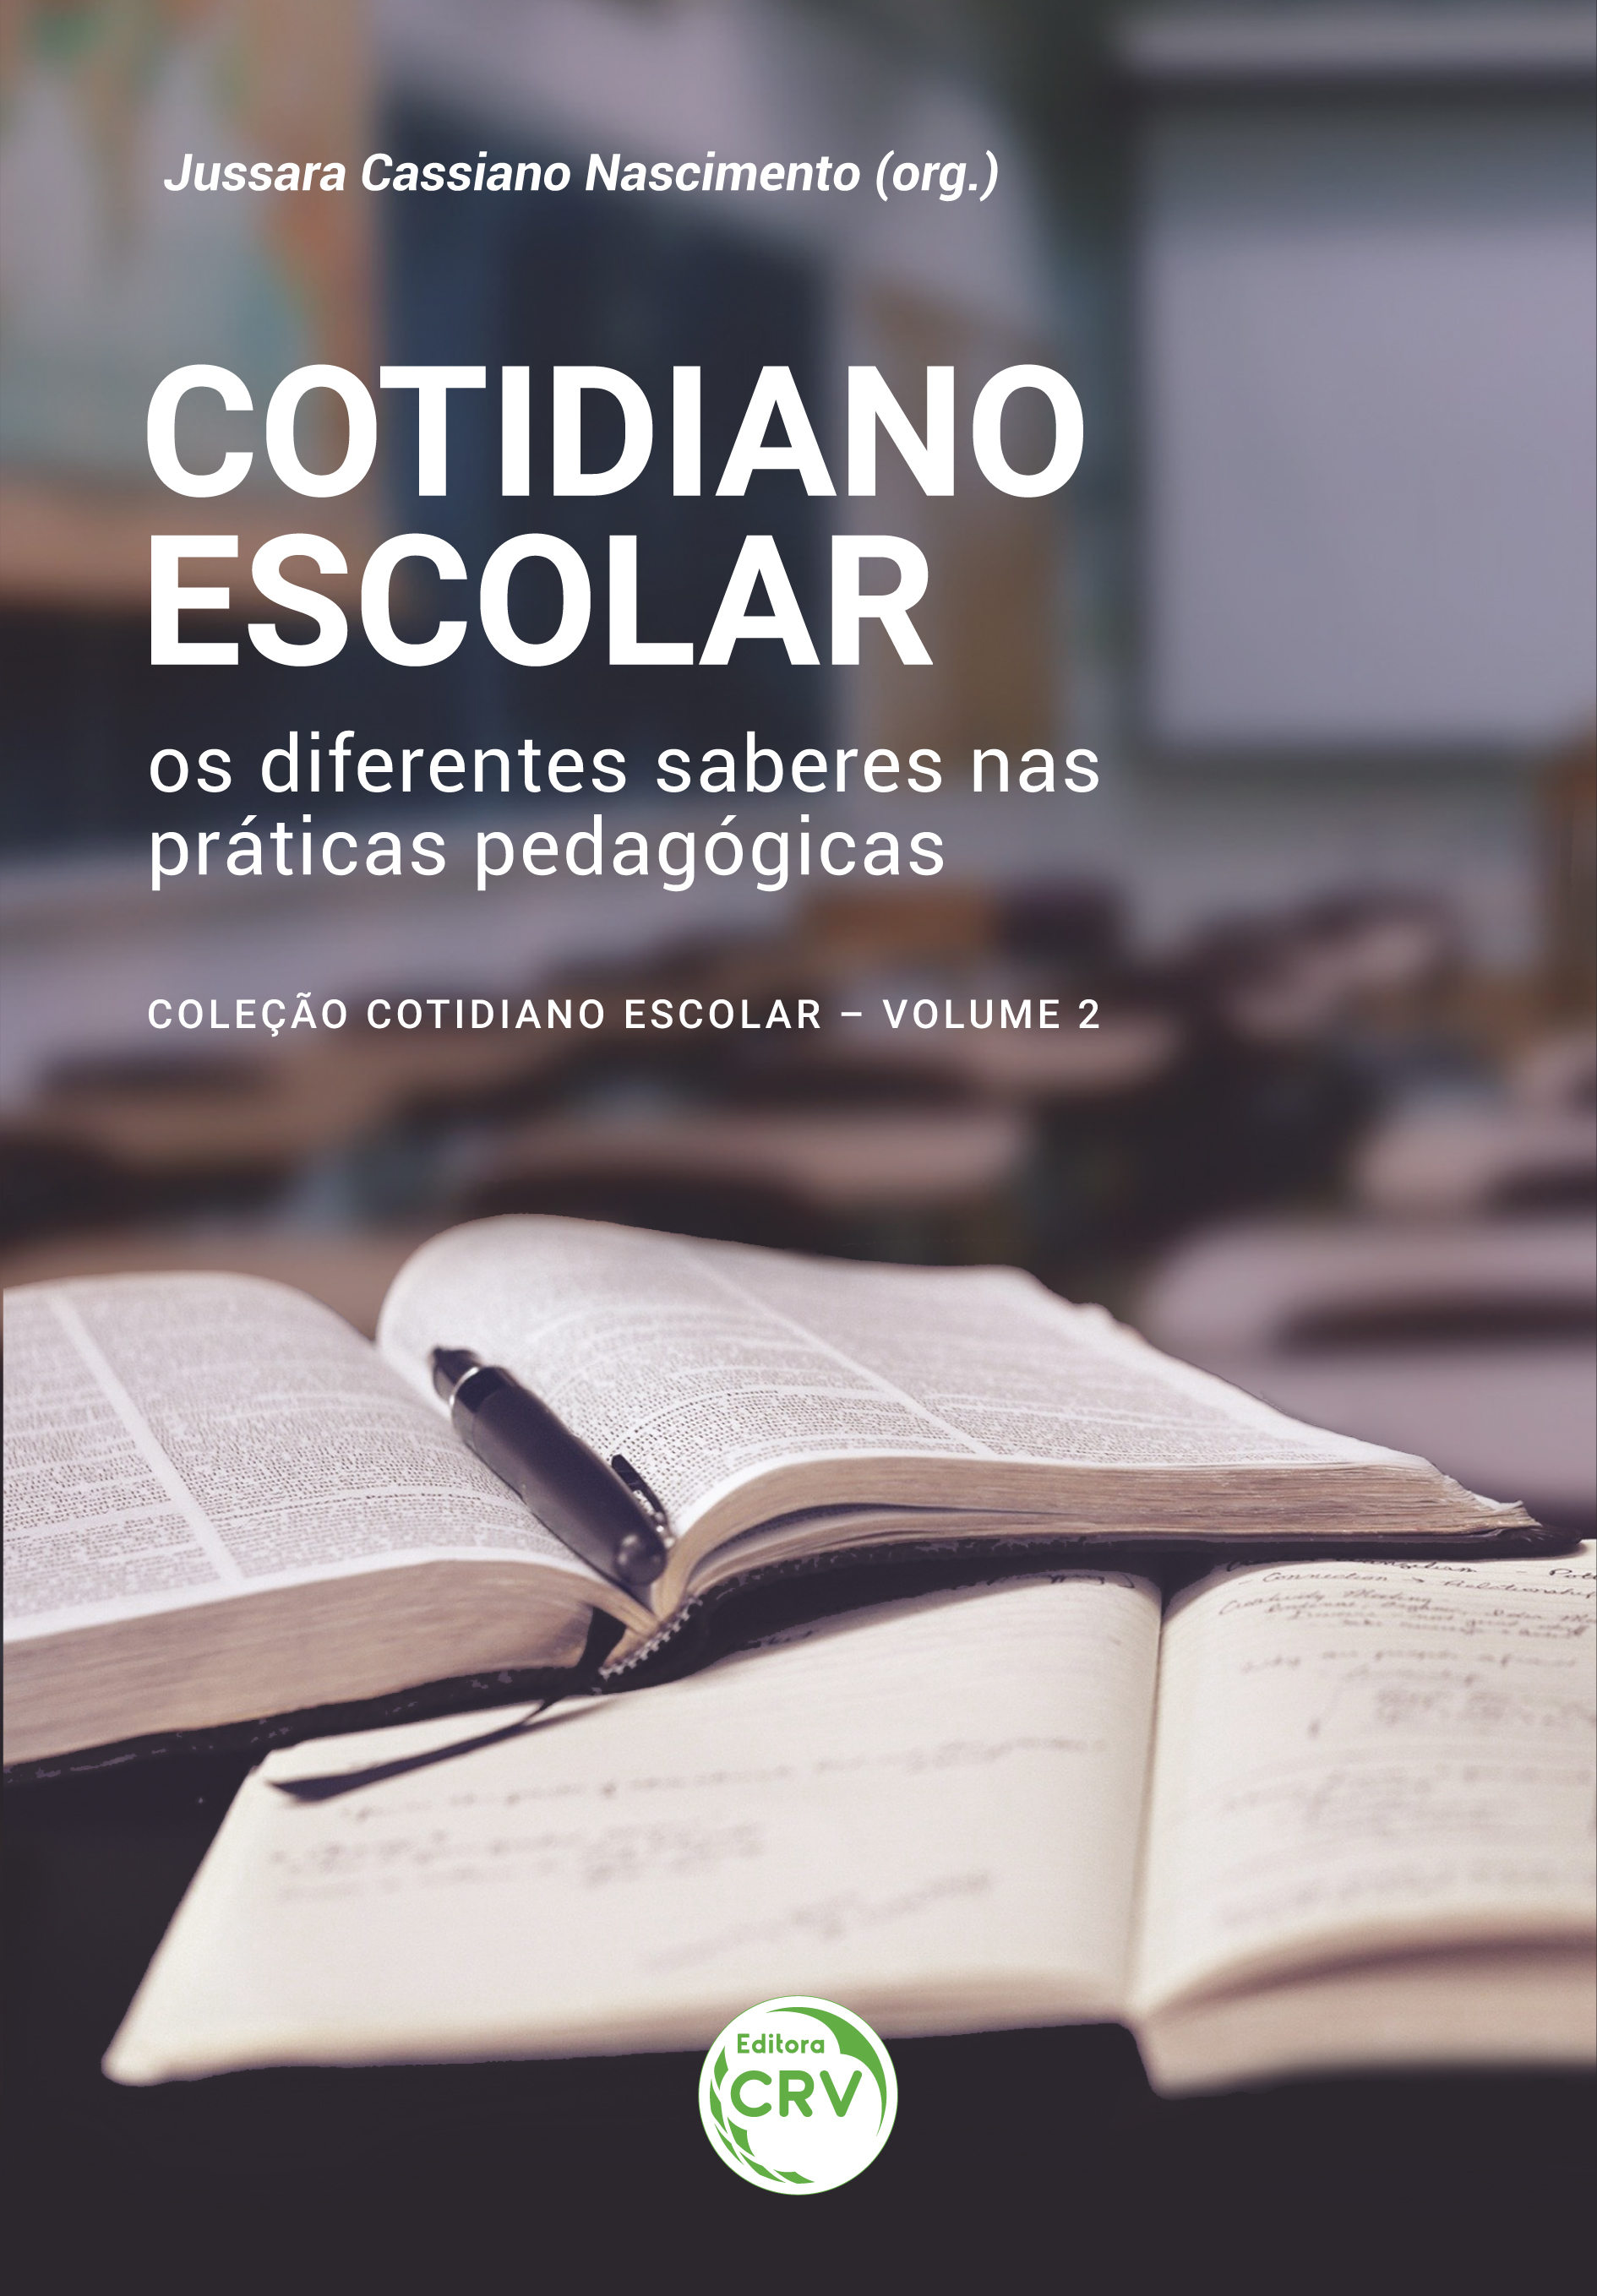 Capa do livro: COTIDIANO ESCOLAR: <br>os diferentes saberes nas práticas pedagógicas<br><br> Coleção Cotidiano Escolar - Volume 2